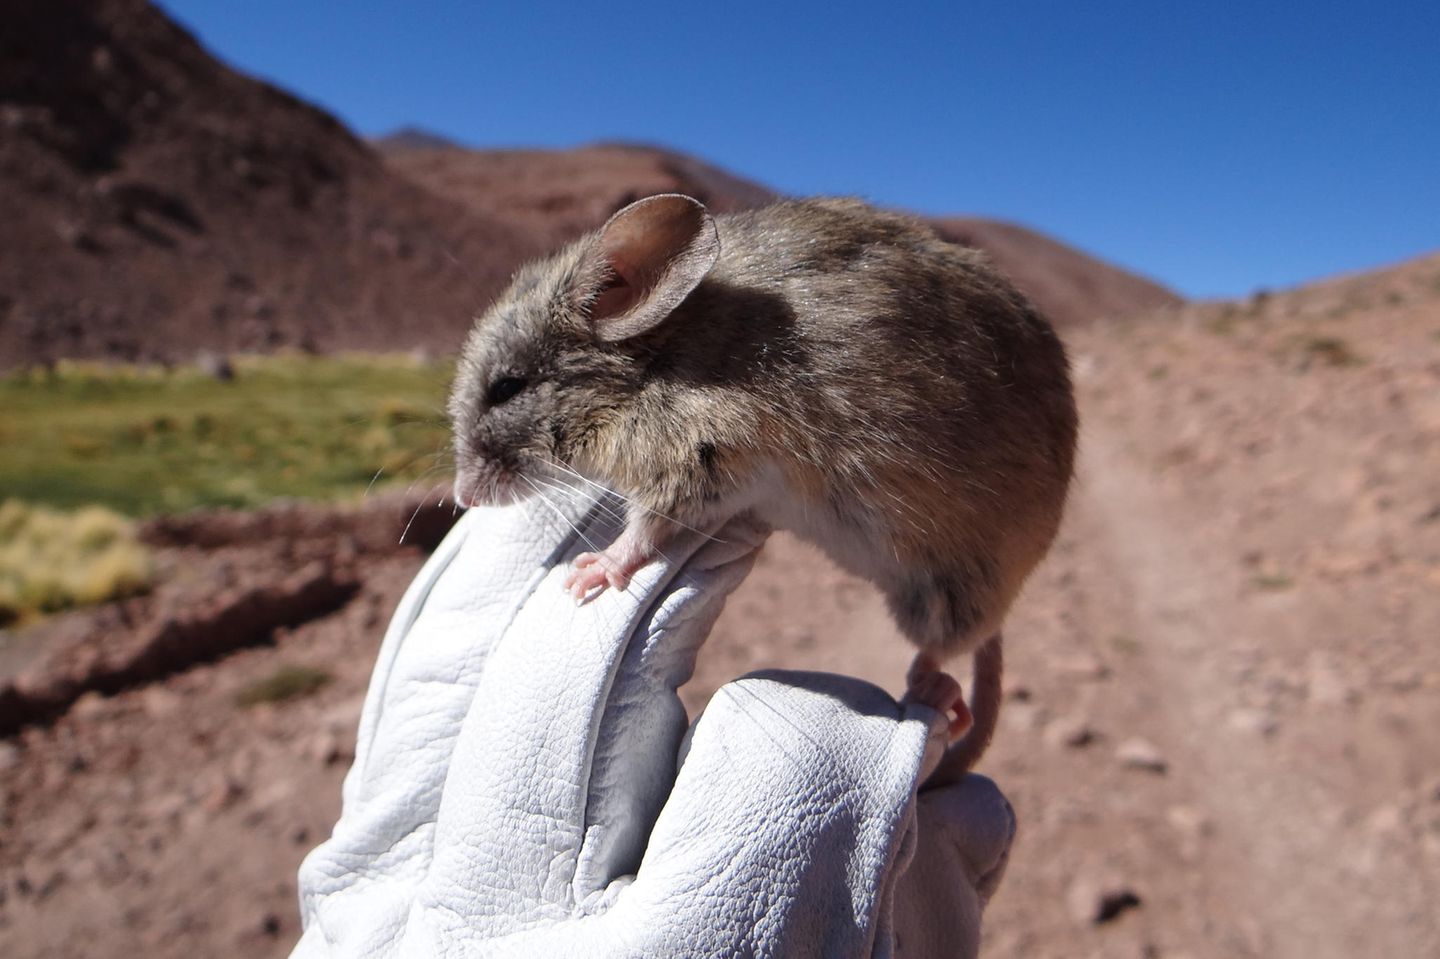 Höhenrekord für Säugetiere: Mäuse lebten auf über 6000 Metern - [GEO]